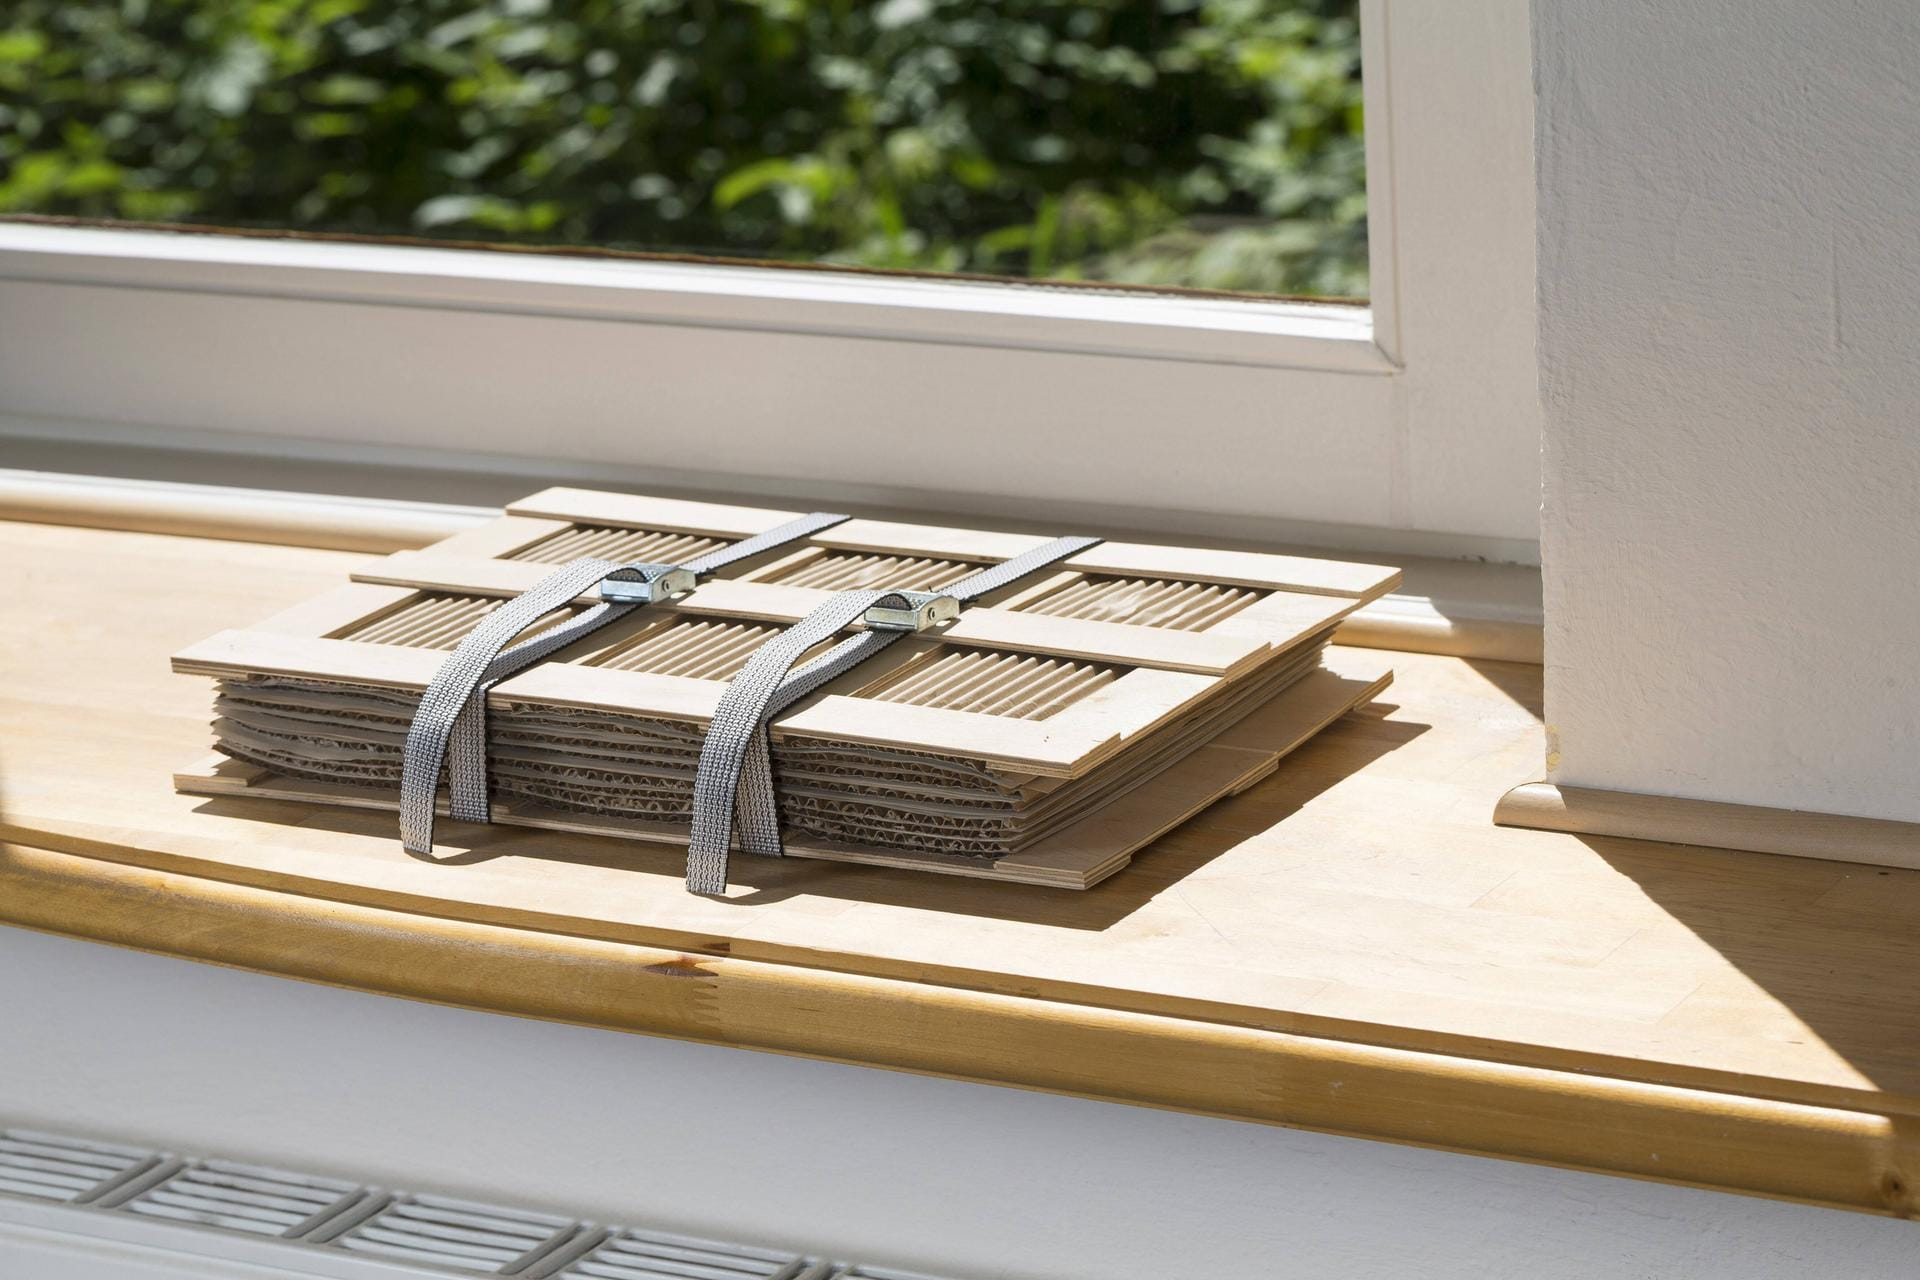 Pflanzenpresse liegt auf Fensterbank: Damit die Blätter schneller trocknen, legen Sie die Presse an einen sonnigen Ort oder auf die Heizung.